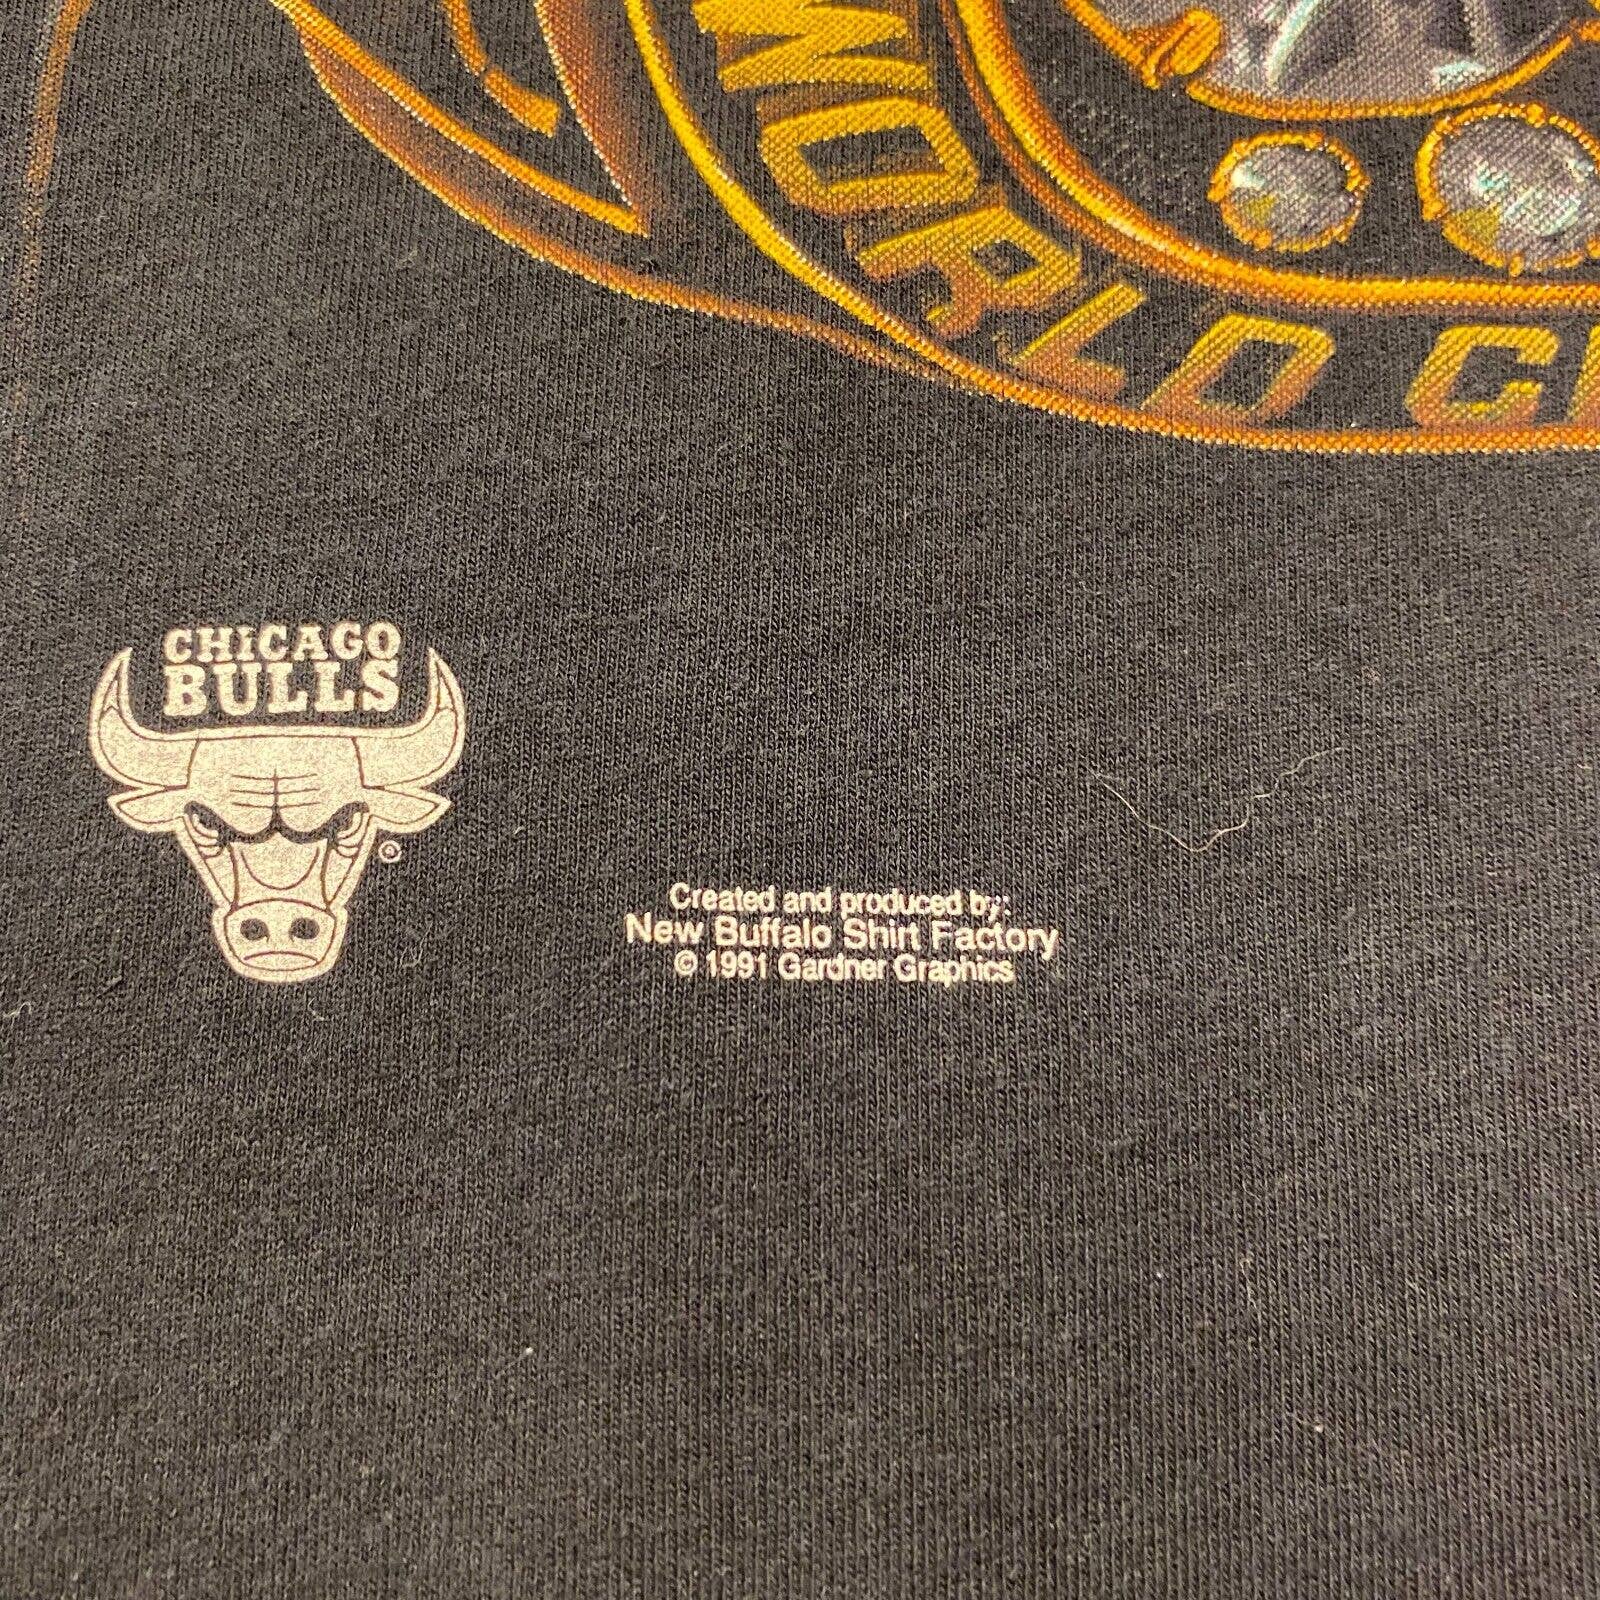 NBA Bulls T-shirt Size L